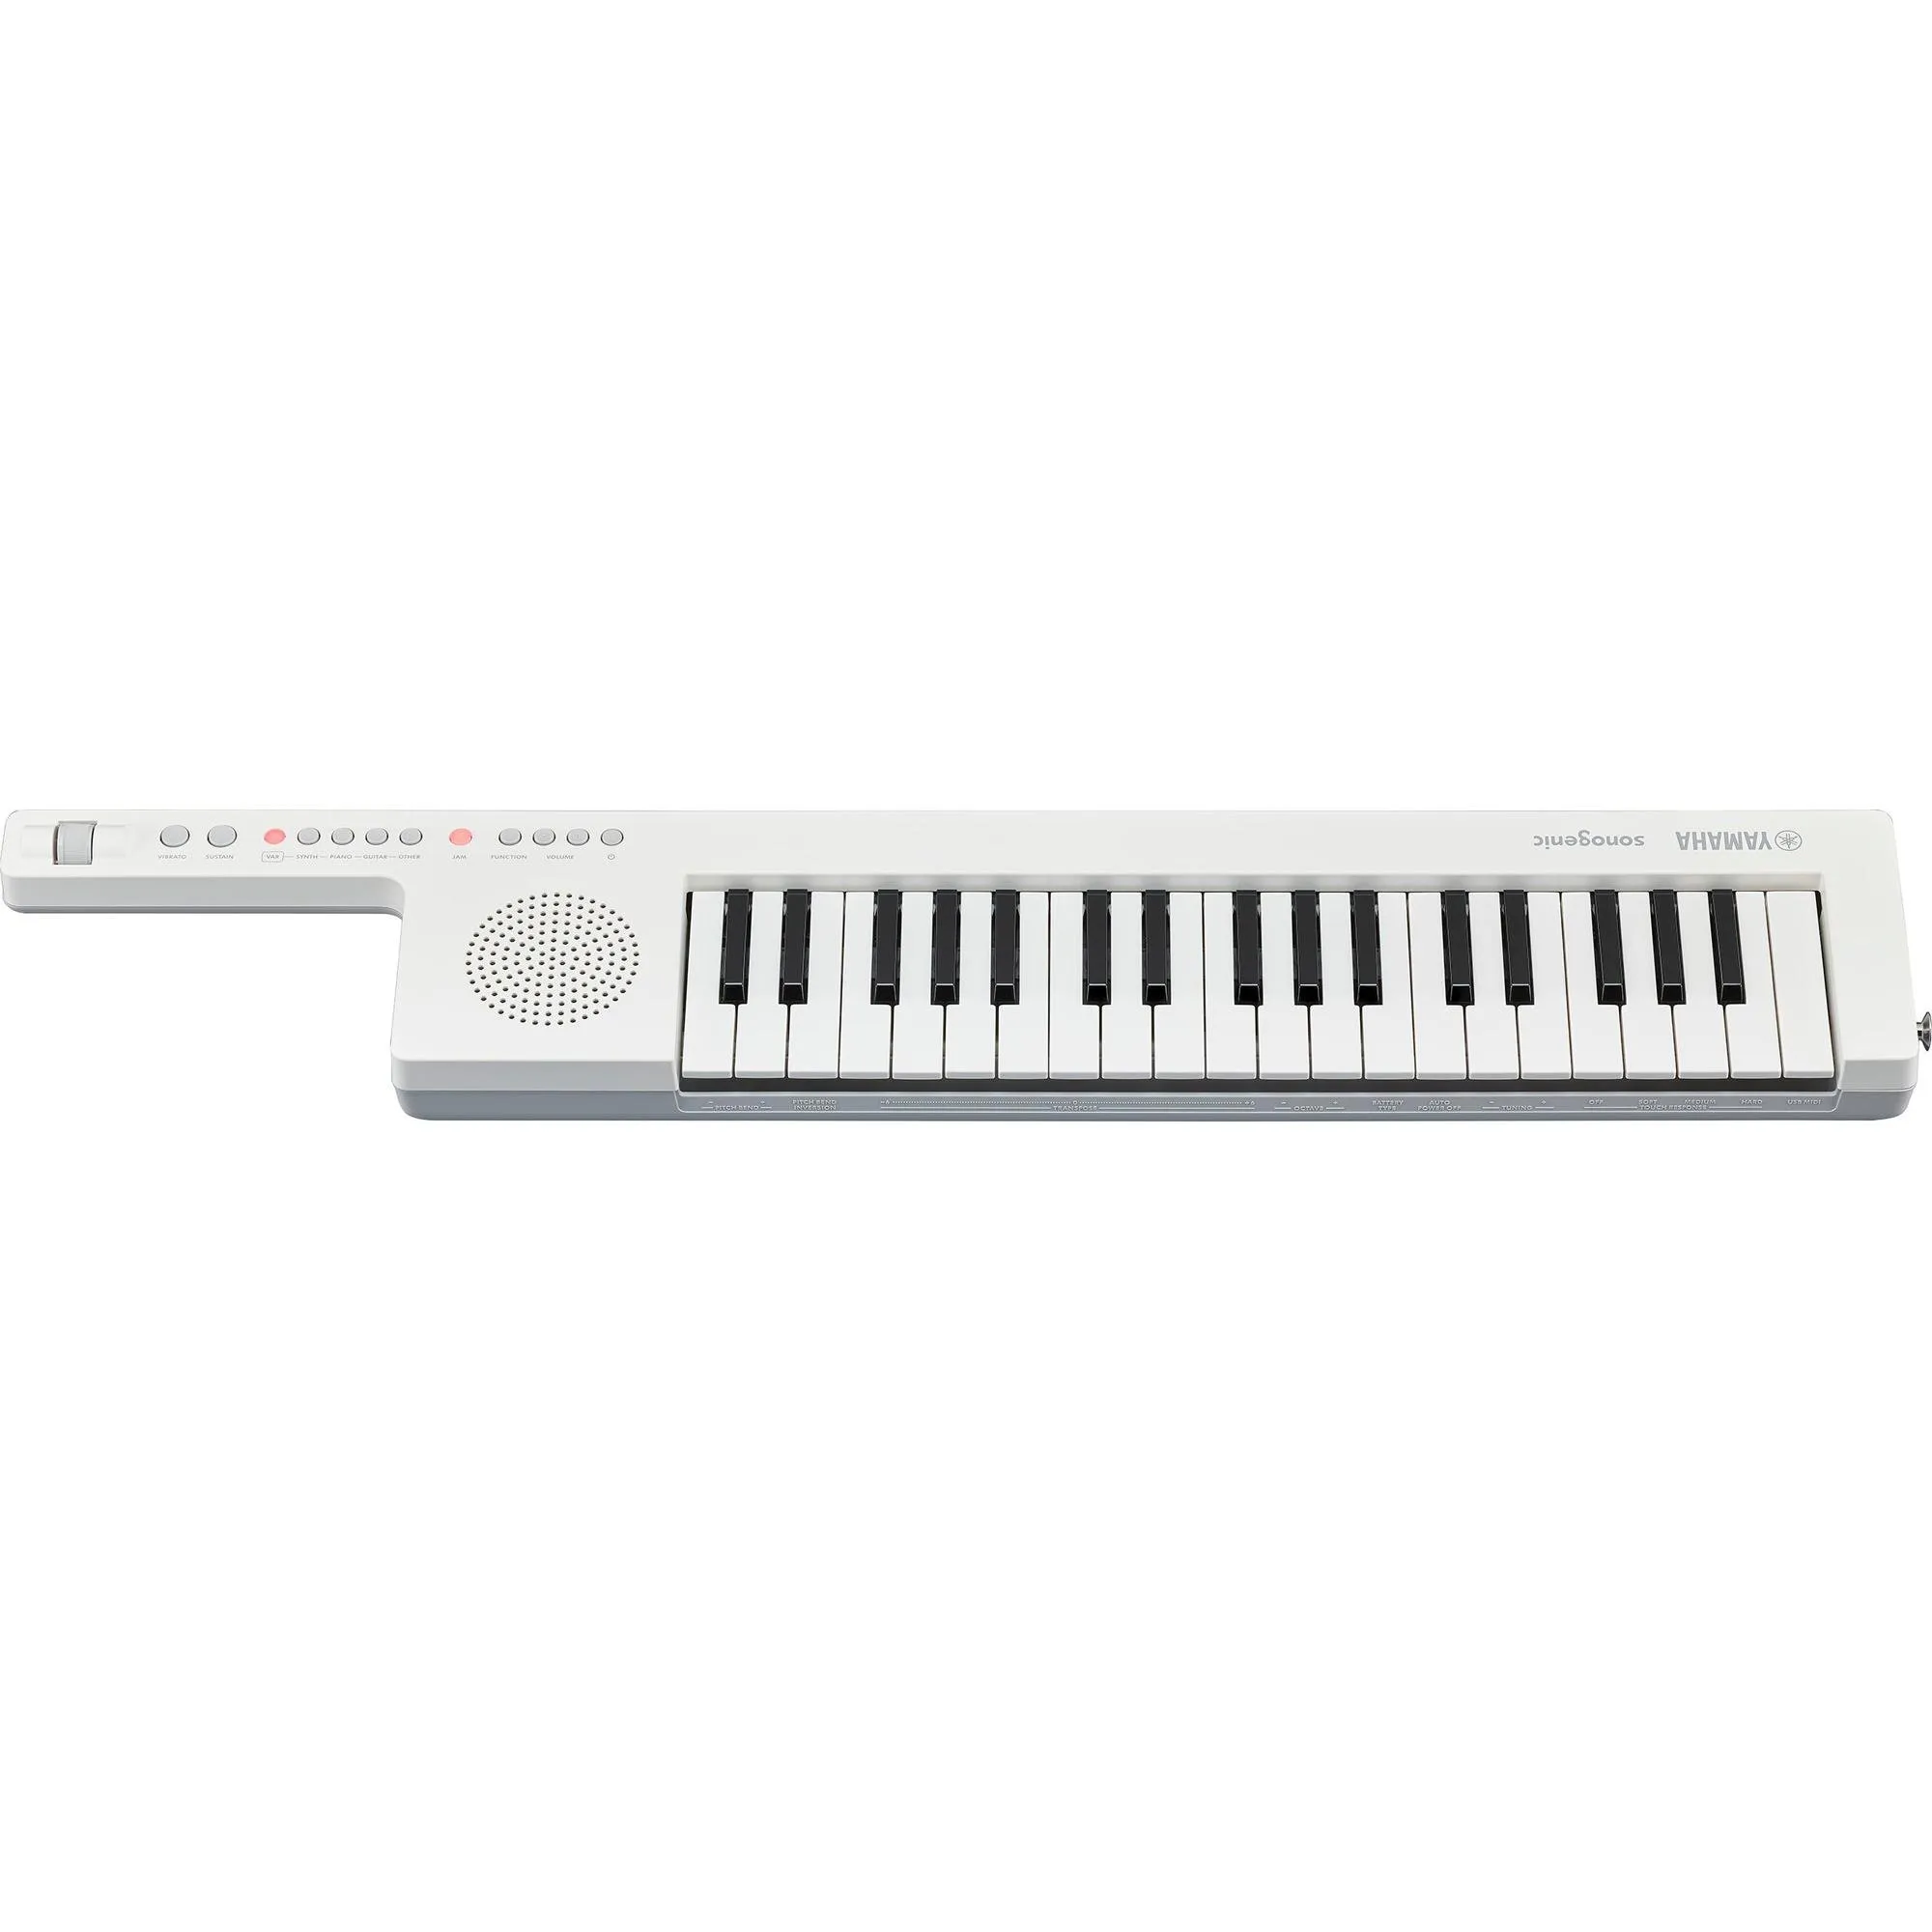 Teclado Yamaha SHS-300 Sonogenic Keytar Branco por 0,00 à vista no boleto/pix ou parcele em até 1x sem juros. Compre na loja Mundomax!